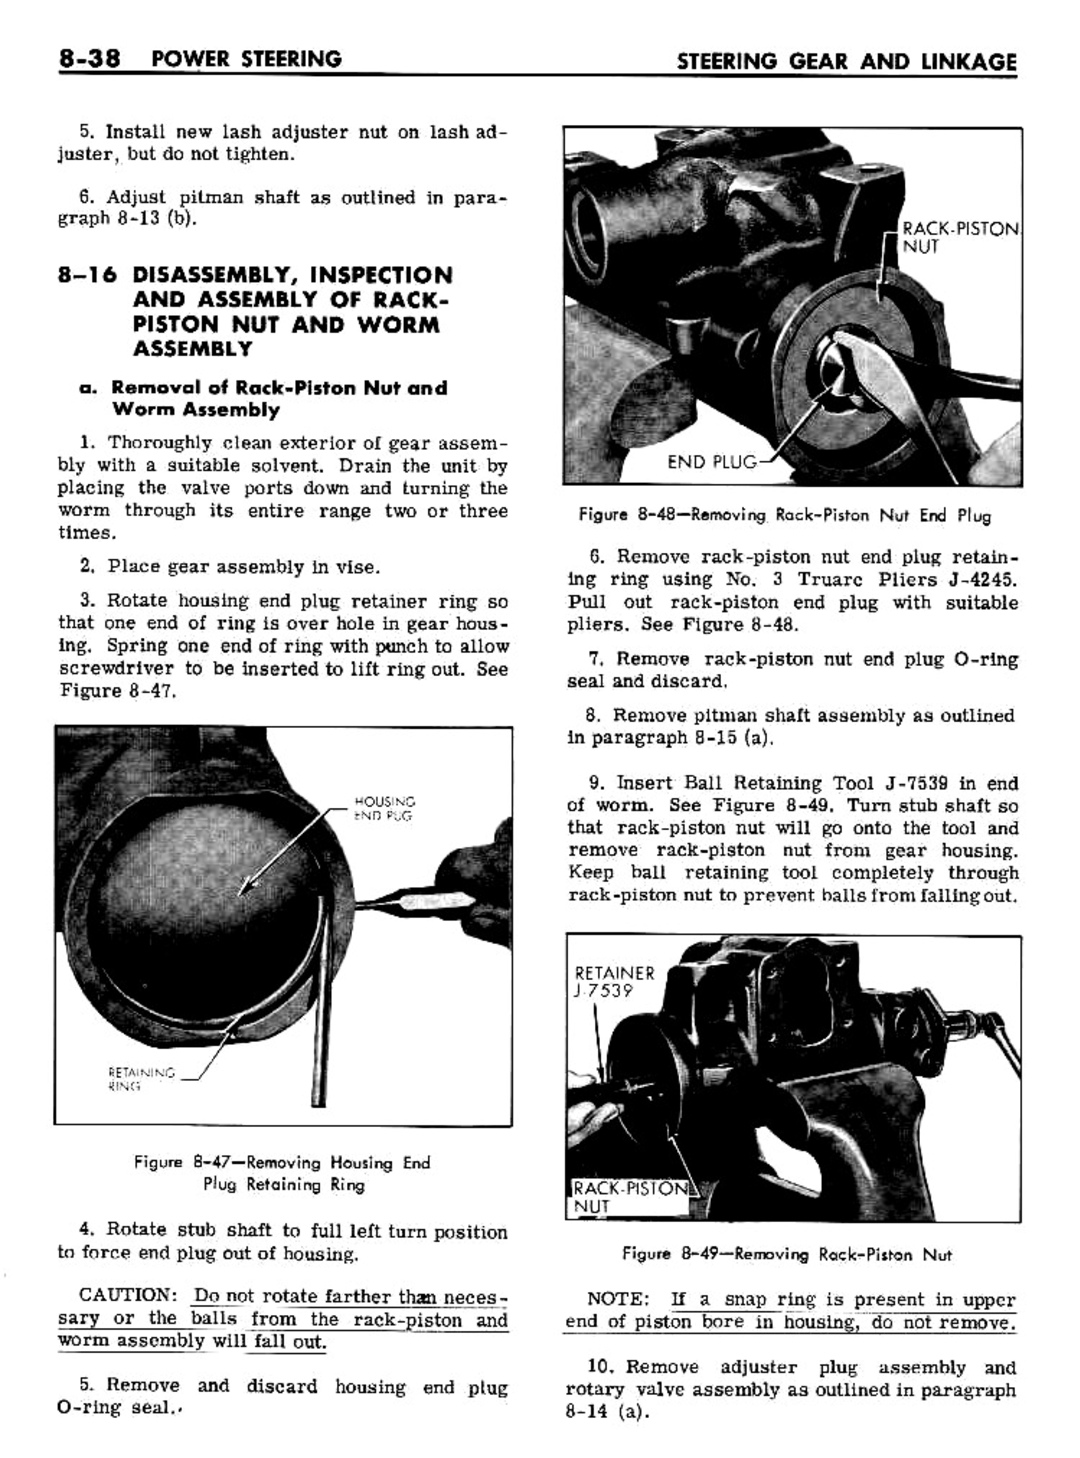 n_08 1961 Buick Shop Manual - Steering-038-038.jpg